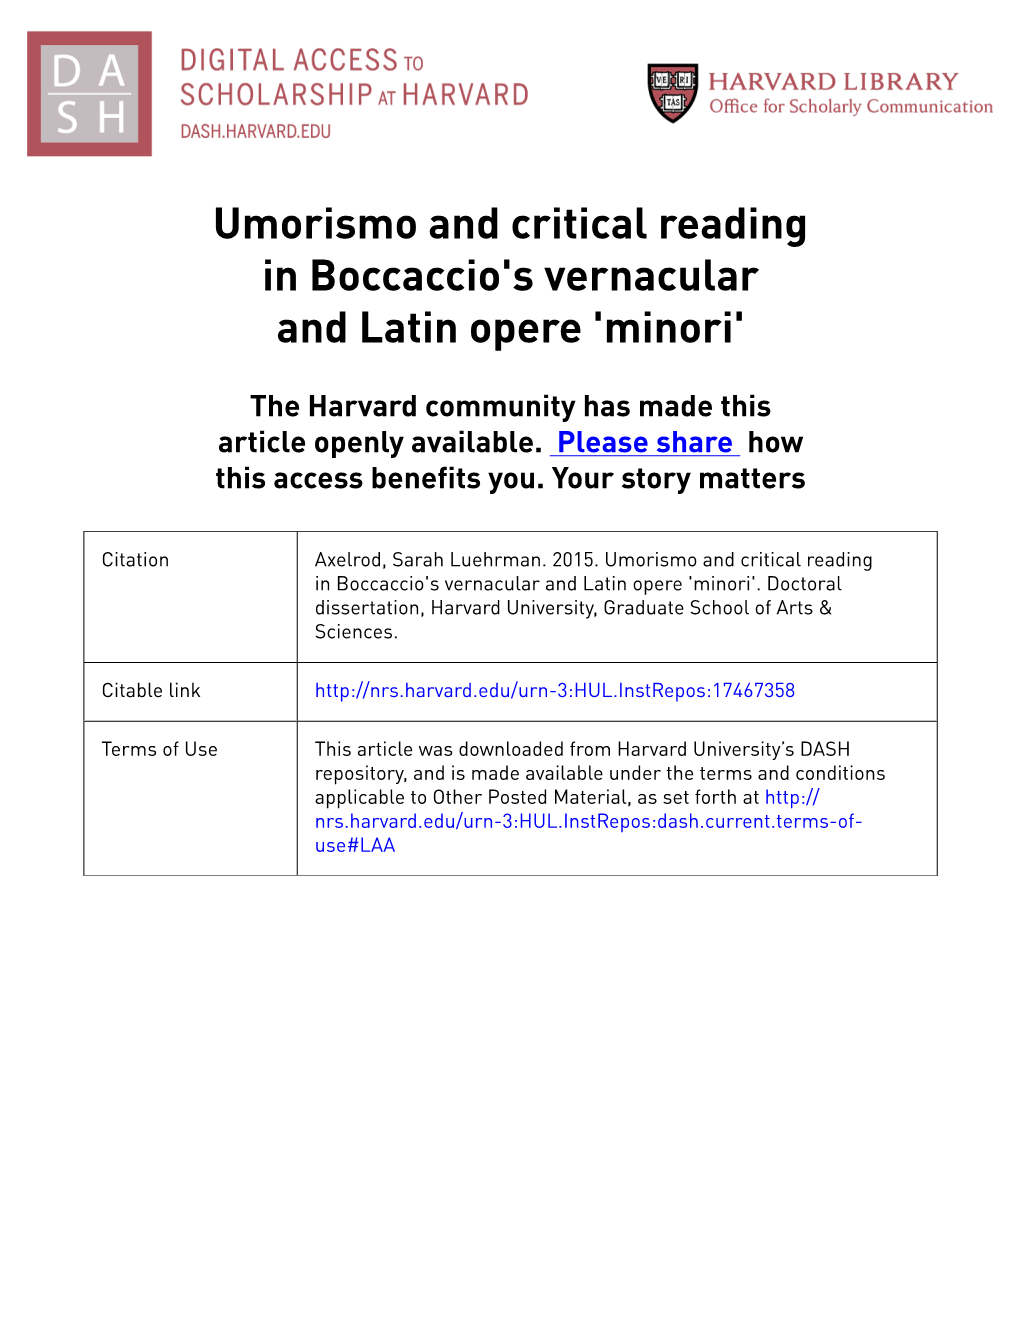 Umorismo and Critical Reading in Boccaccio's Vernacular and Latin Opere 'Minori'